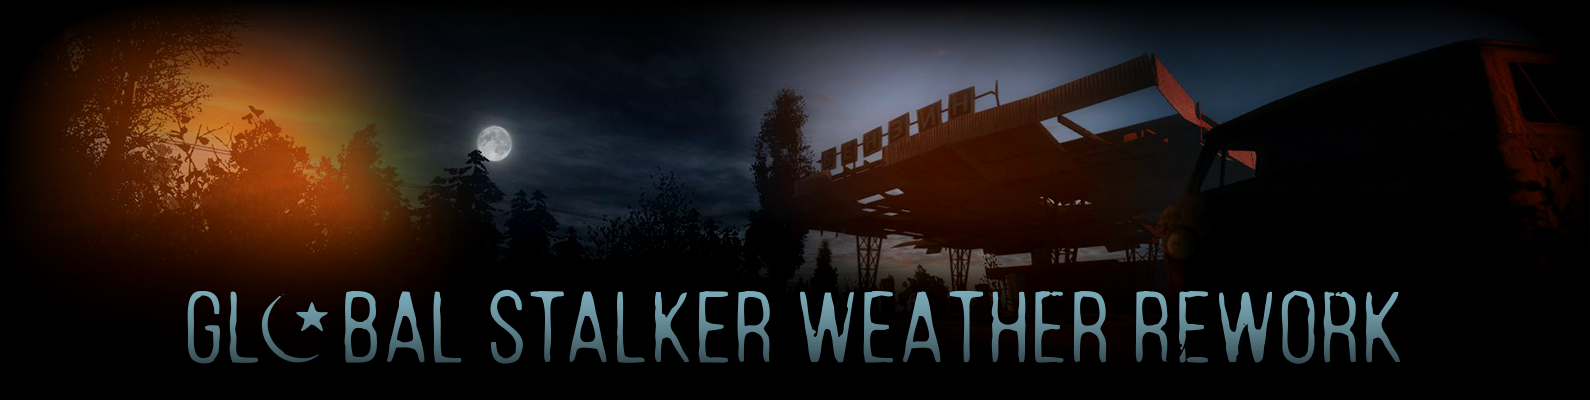 Global Stalker Weather Rework (2021) PC